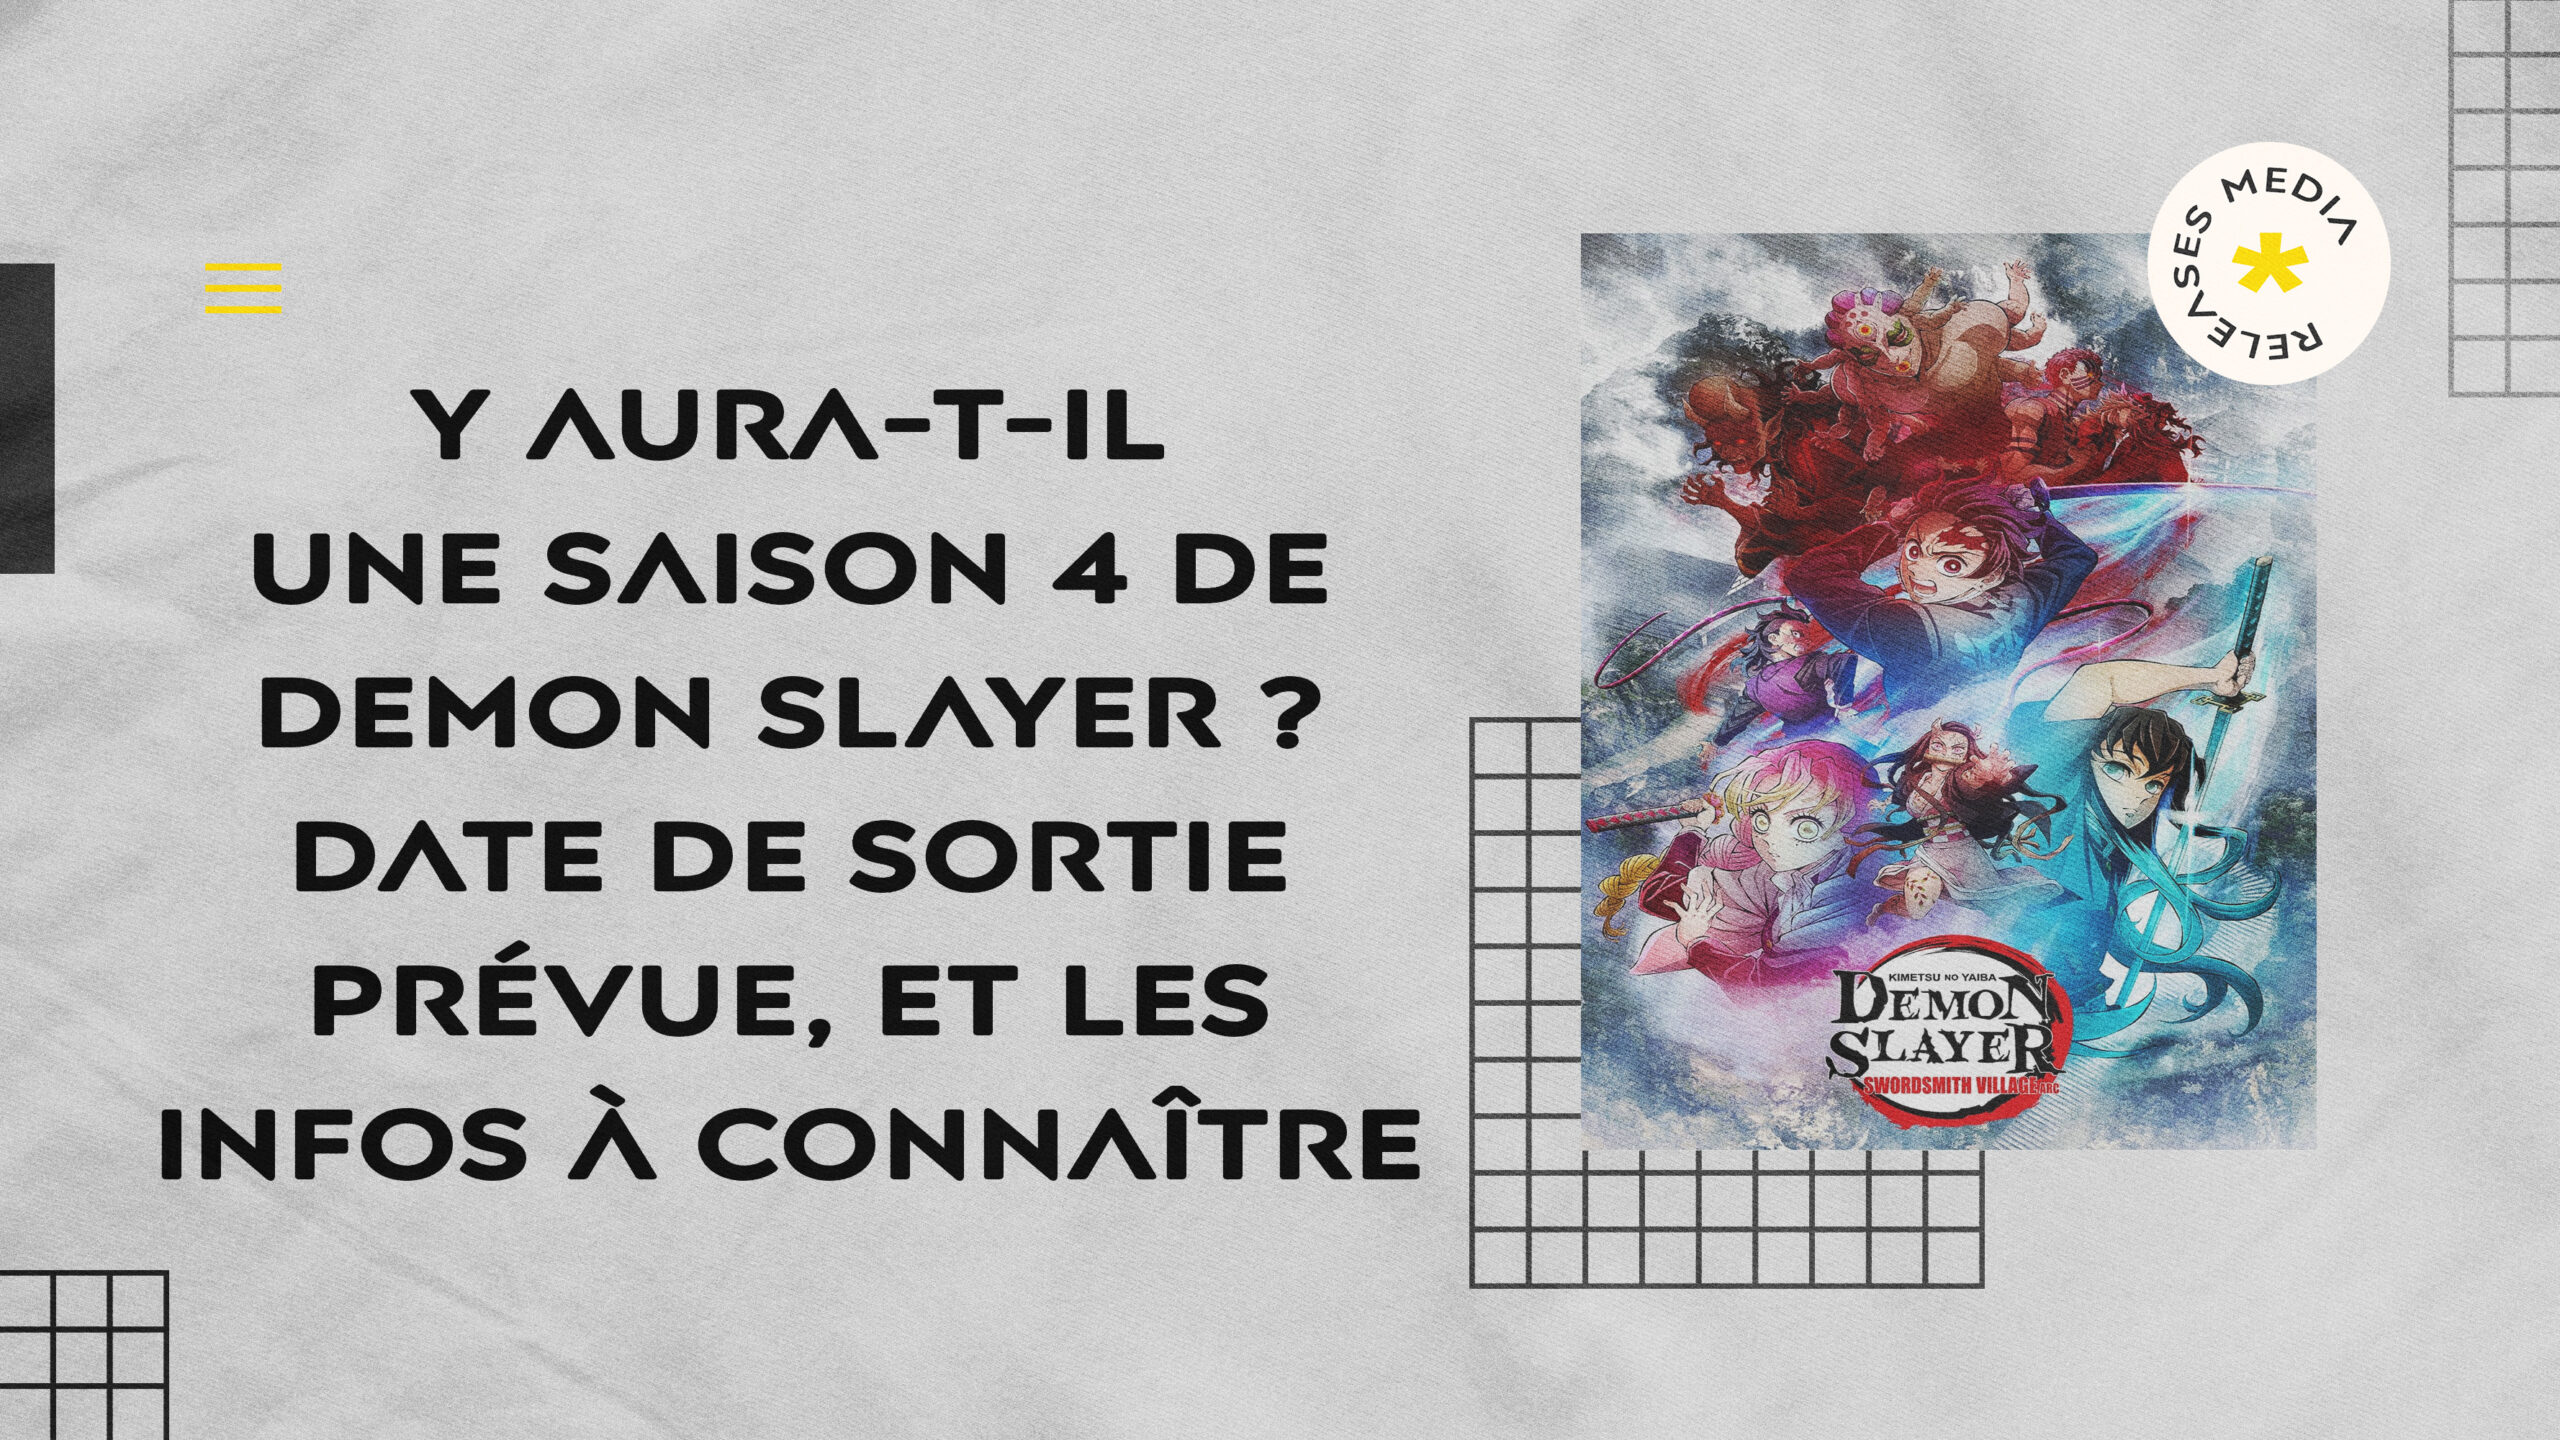 Demon Slayer” : quand et comment voir la saison 4 en France ?